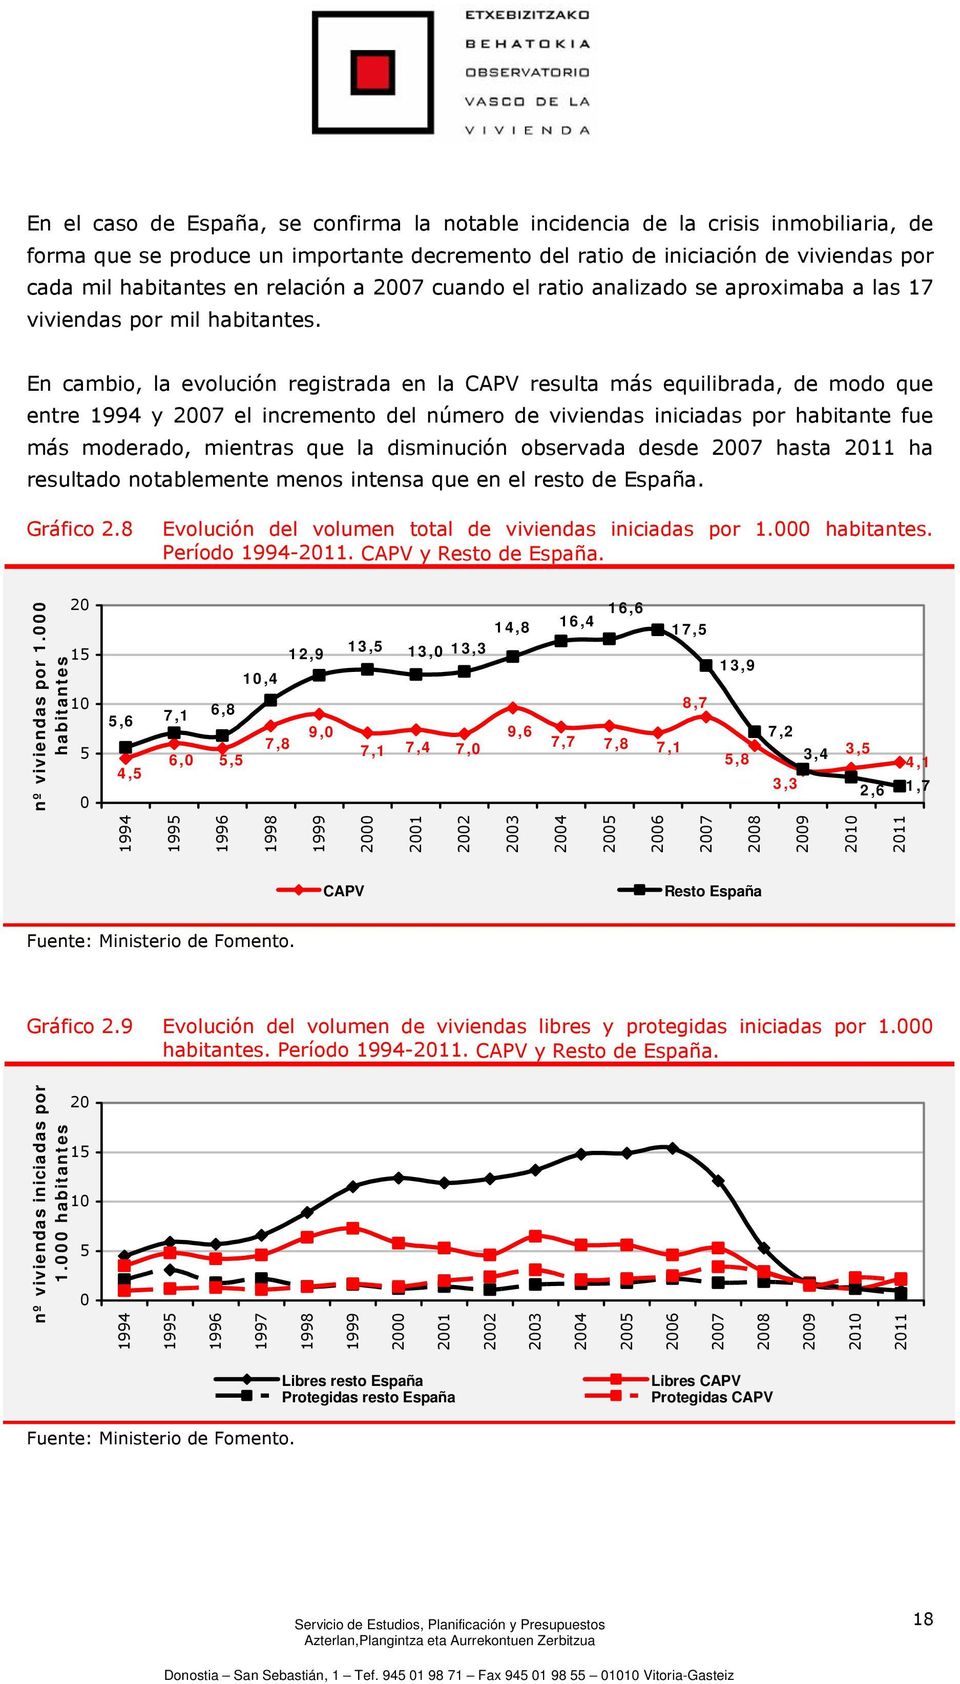 En cambio, la evolución registrada en la CAPV resulta más equilibrada, de modo que entre 1994 y 2007 el incremento del número de viviendas iniciadas por habitante fue más moderado, mientras que la